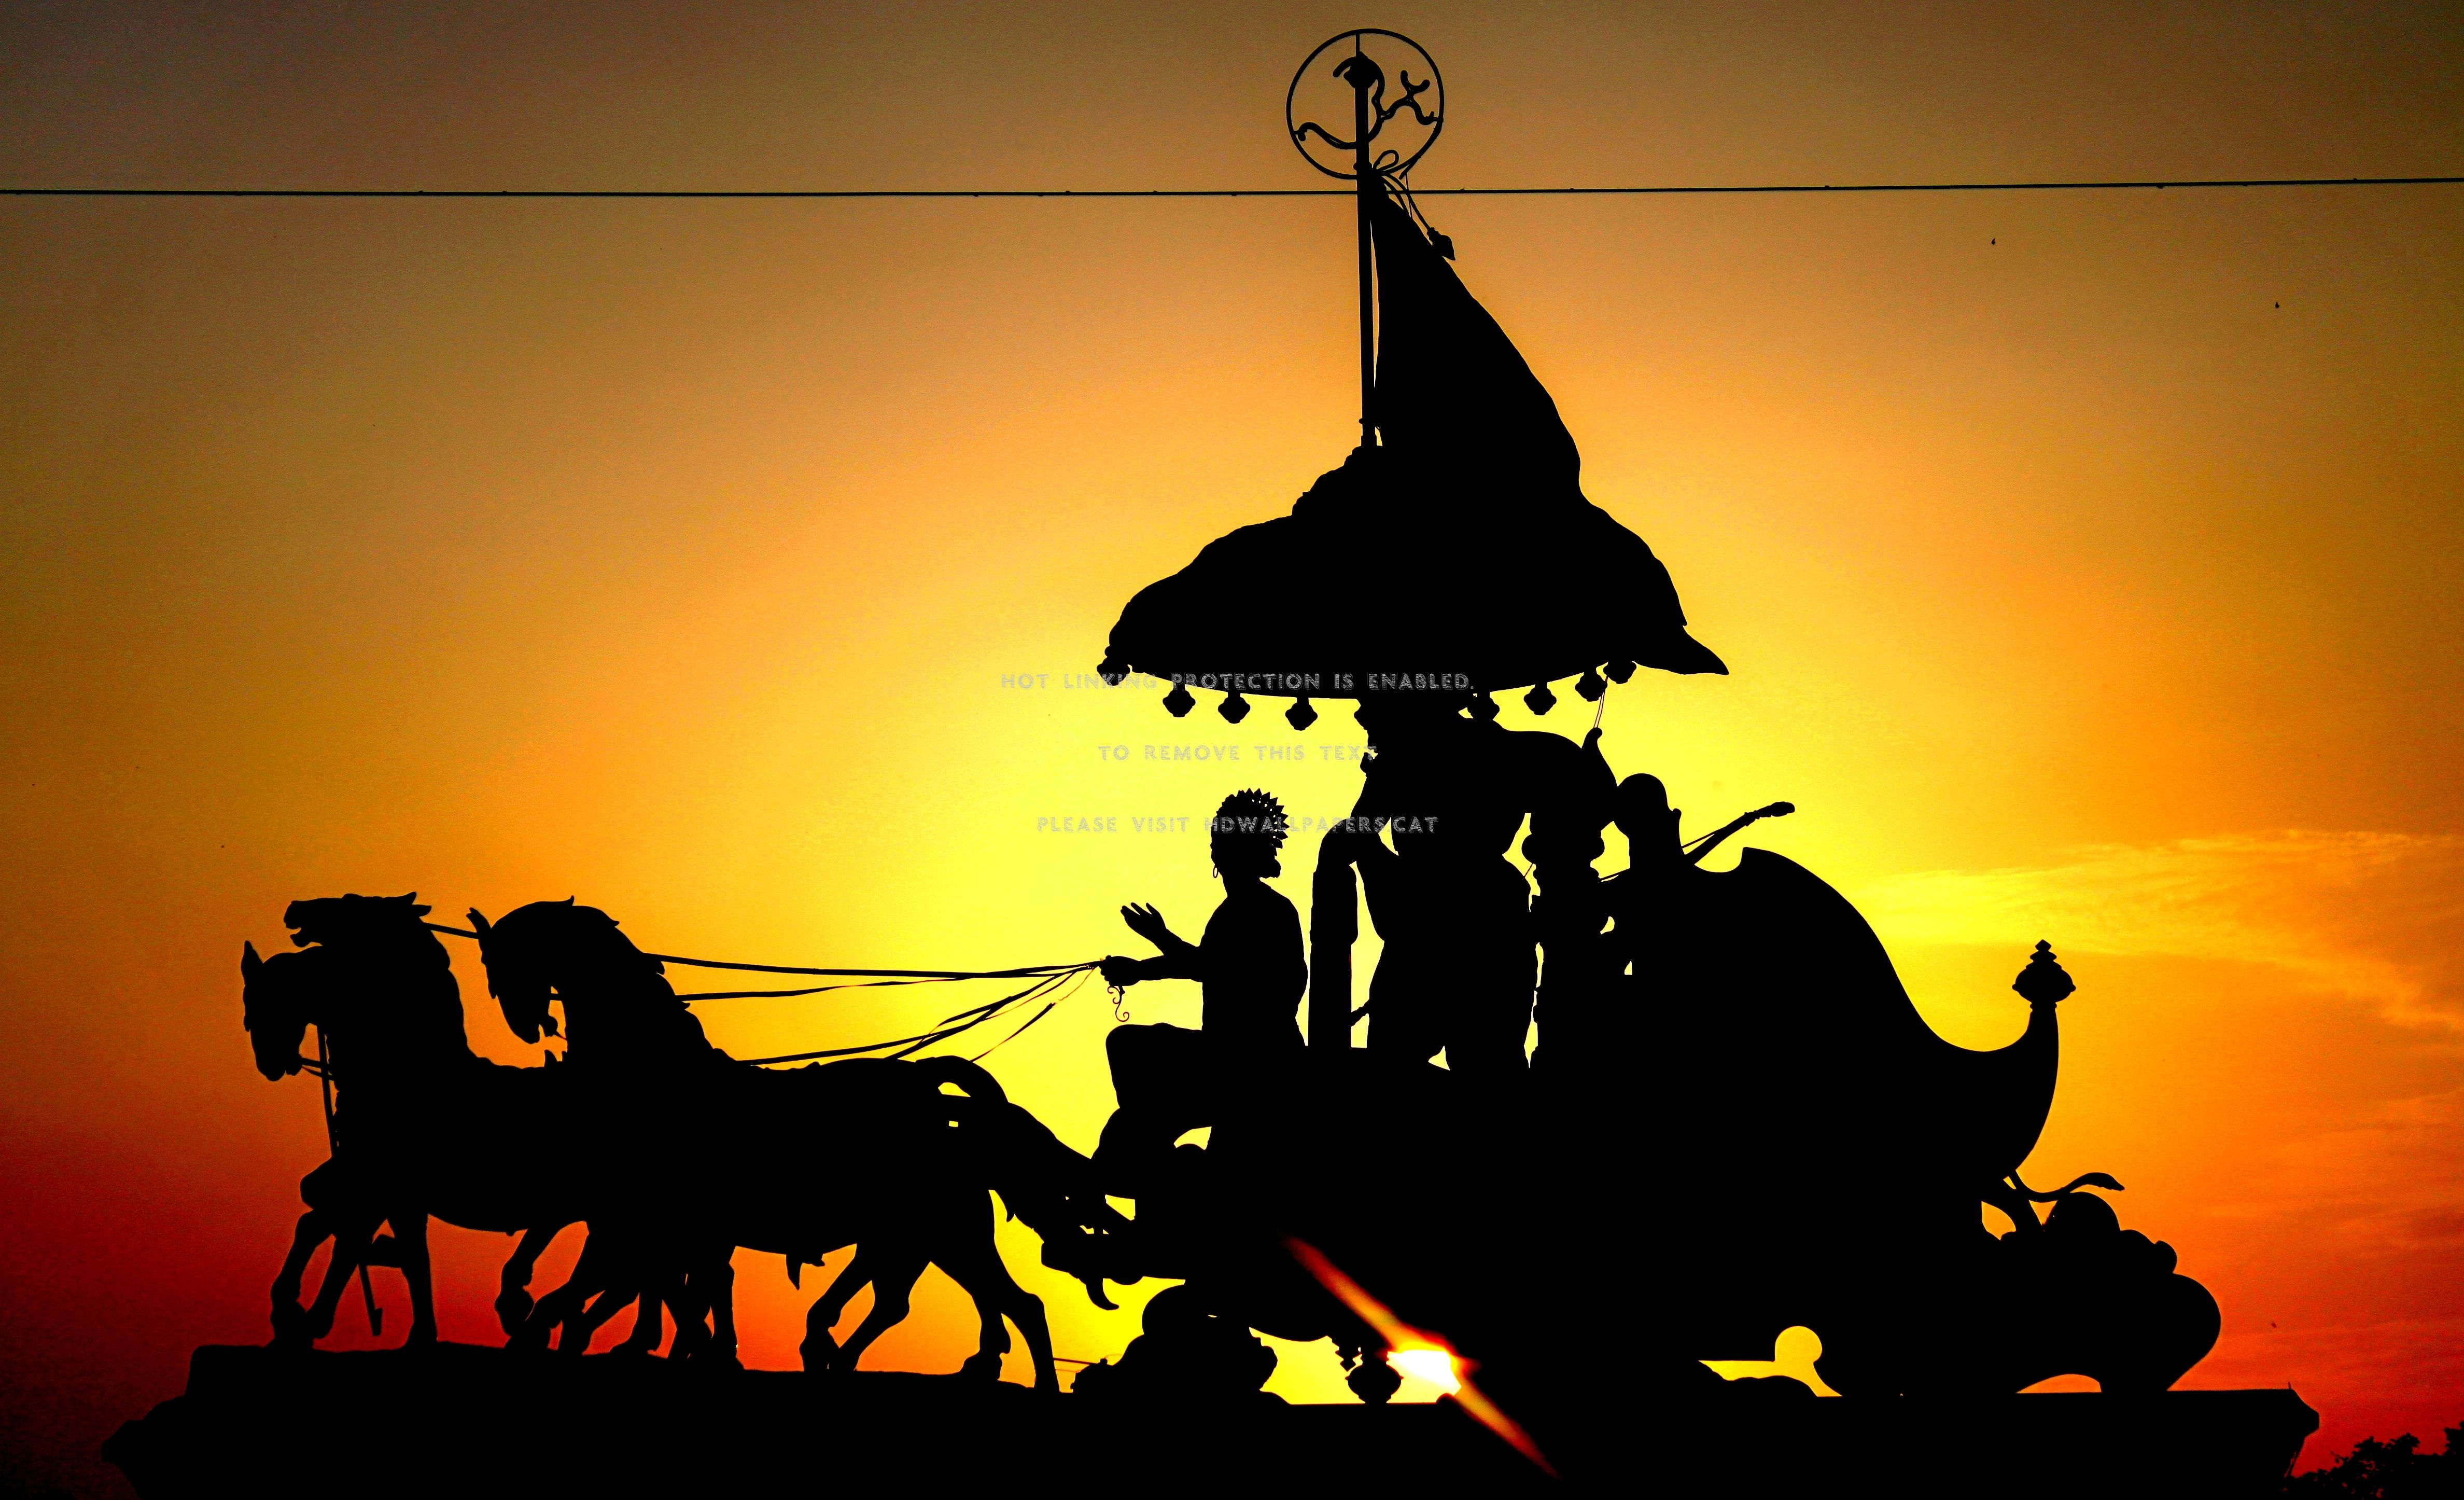 arjuna's chariot( mahabharata) mythology